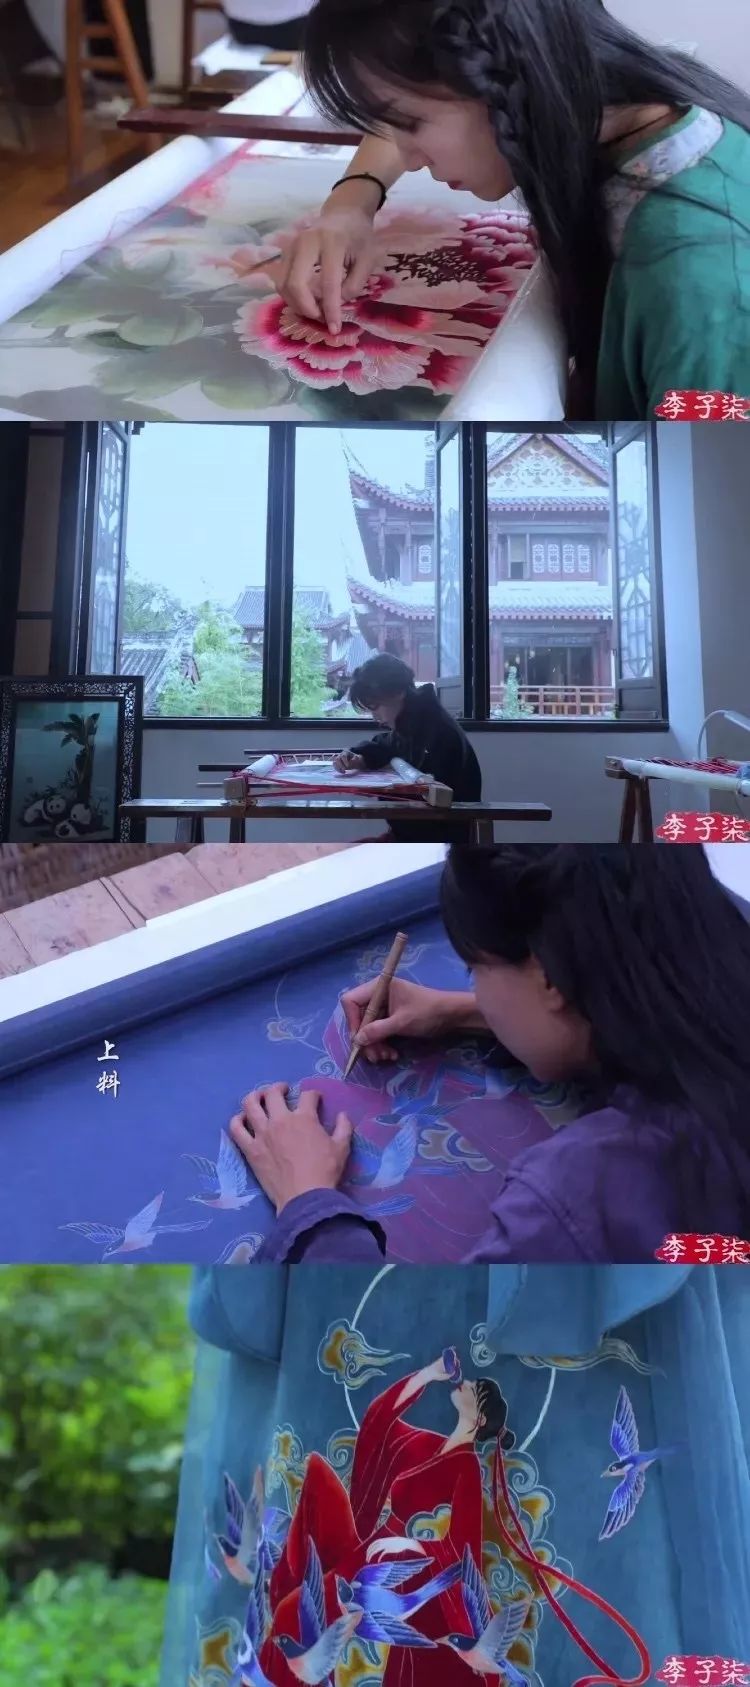 宝藏女孩李子柒,造纸刻字写书法做手工,誉为中国达芬奇